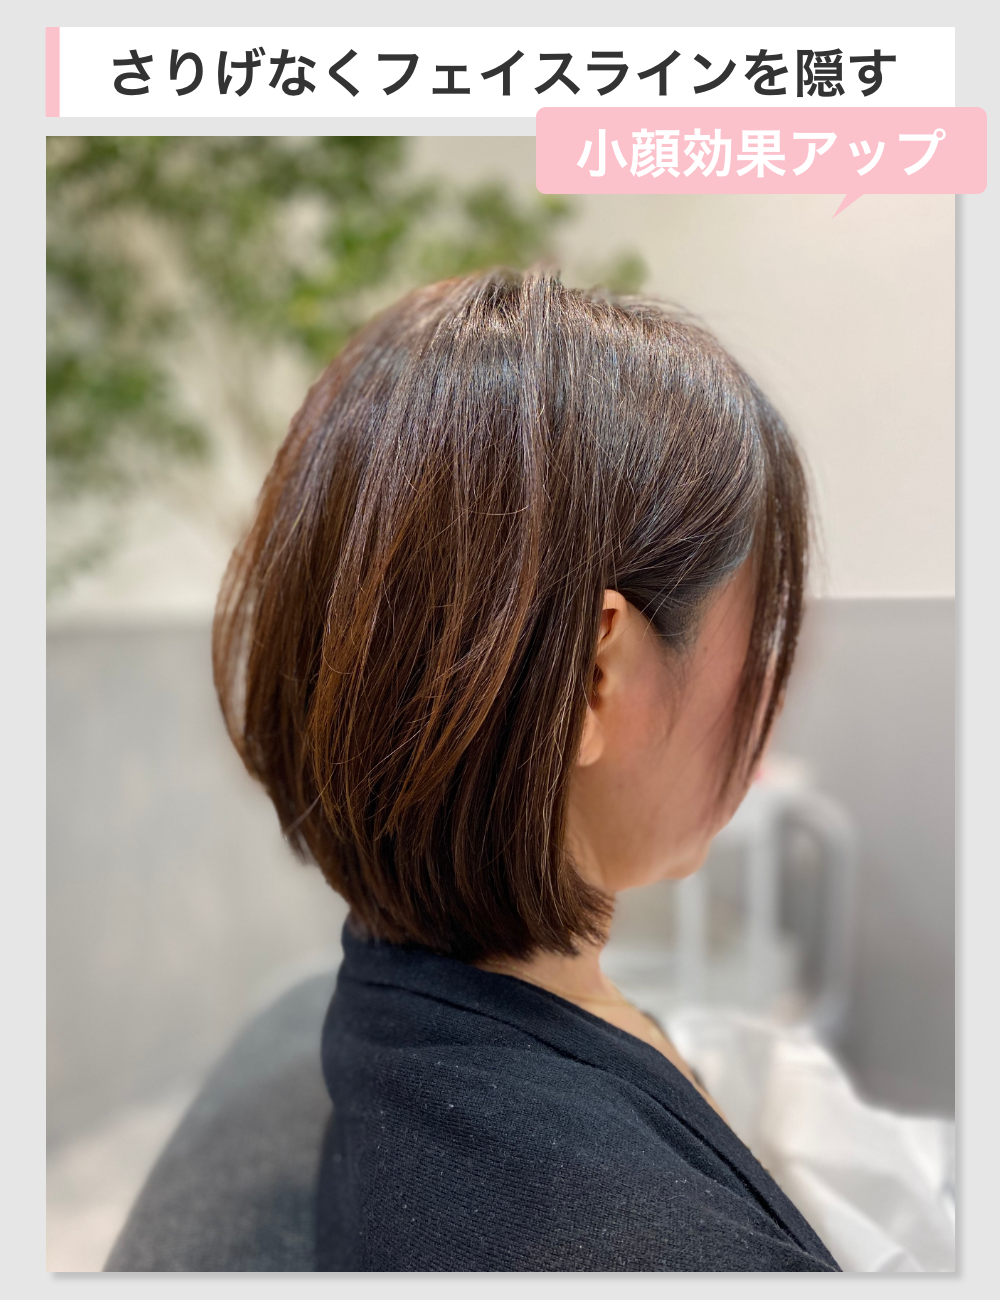 60代のぽっちゃりを素敵にカバーできる髪型 似合う髪型を美容師が解説 くせ毛love 40歳からのヘアケア情報サイト